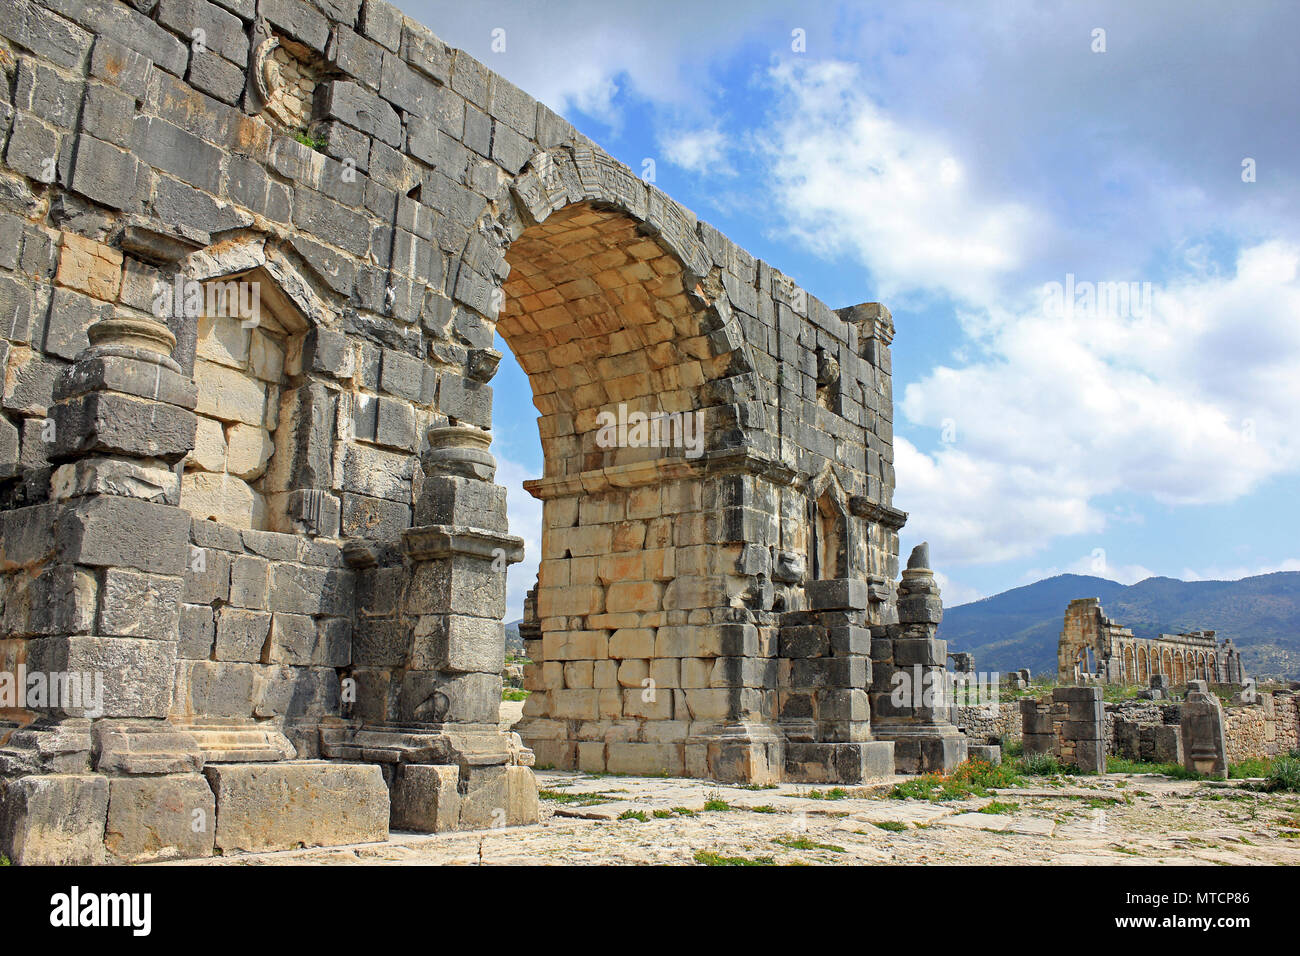 El arco triunfal dedicado al emperador Caracalla en el siglo III ruinas de Volubilis Foto de stock